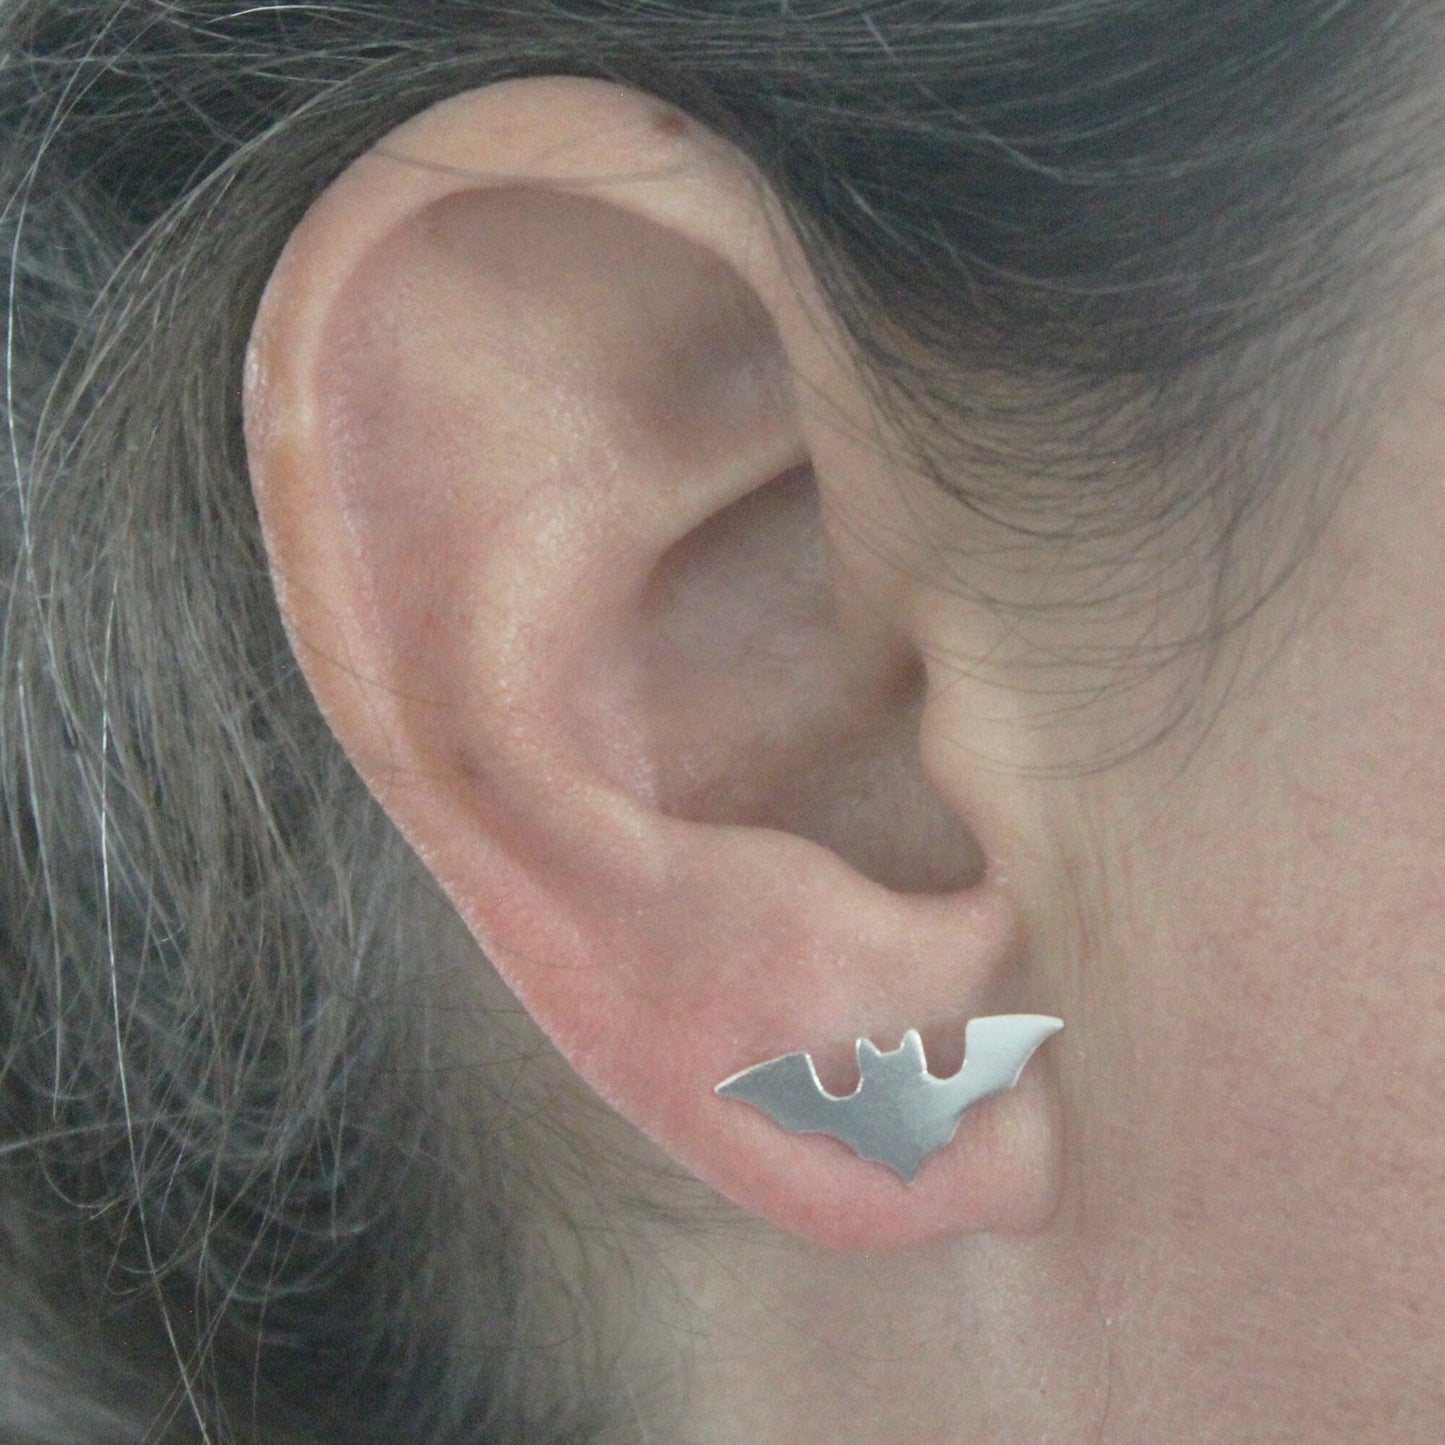 Bats earrings in 925 silver